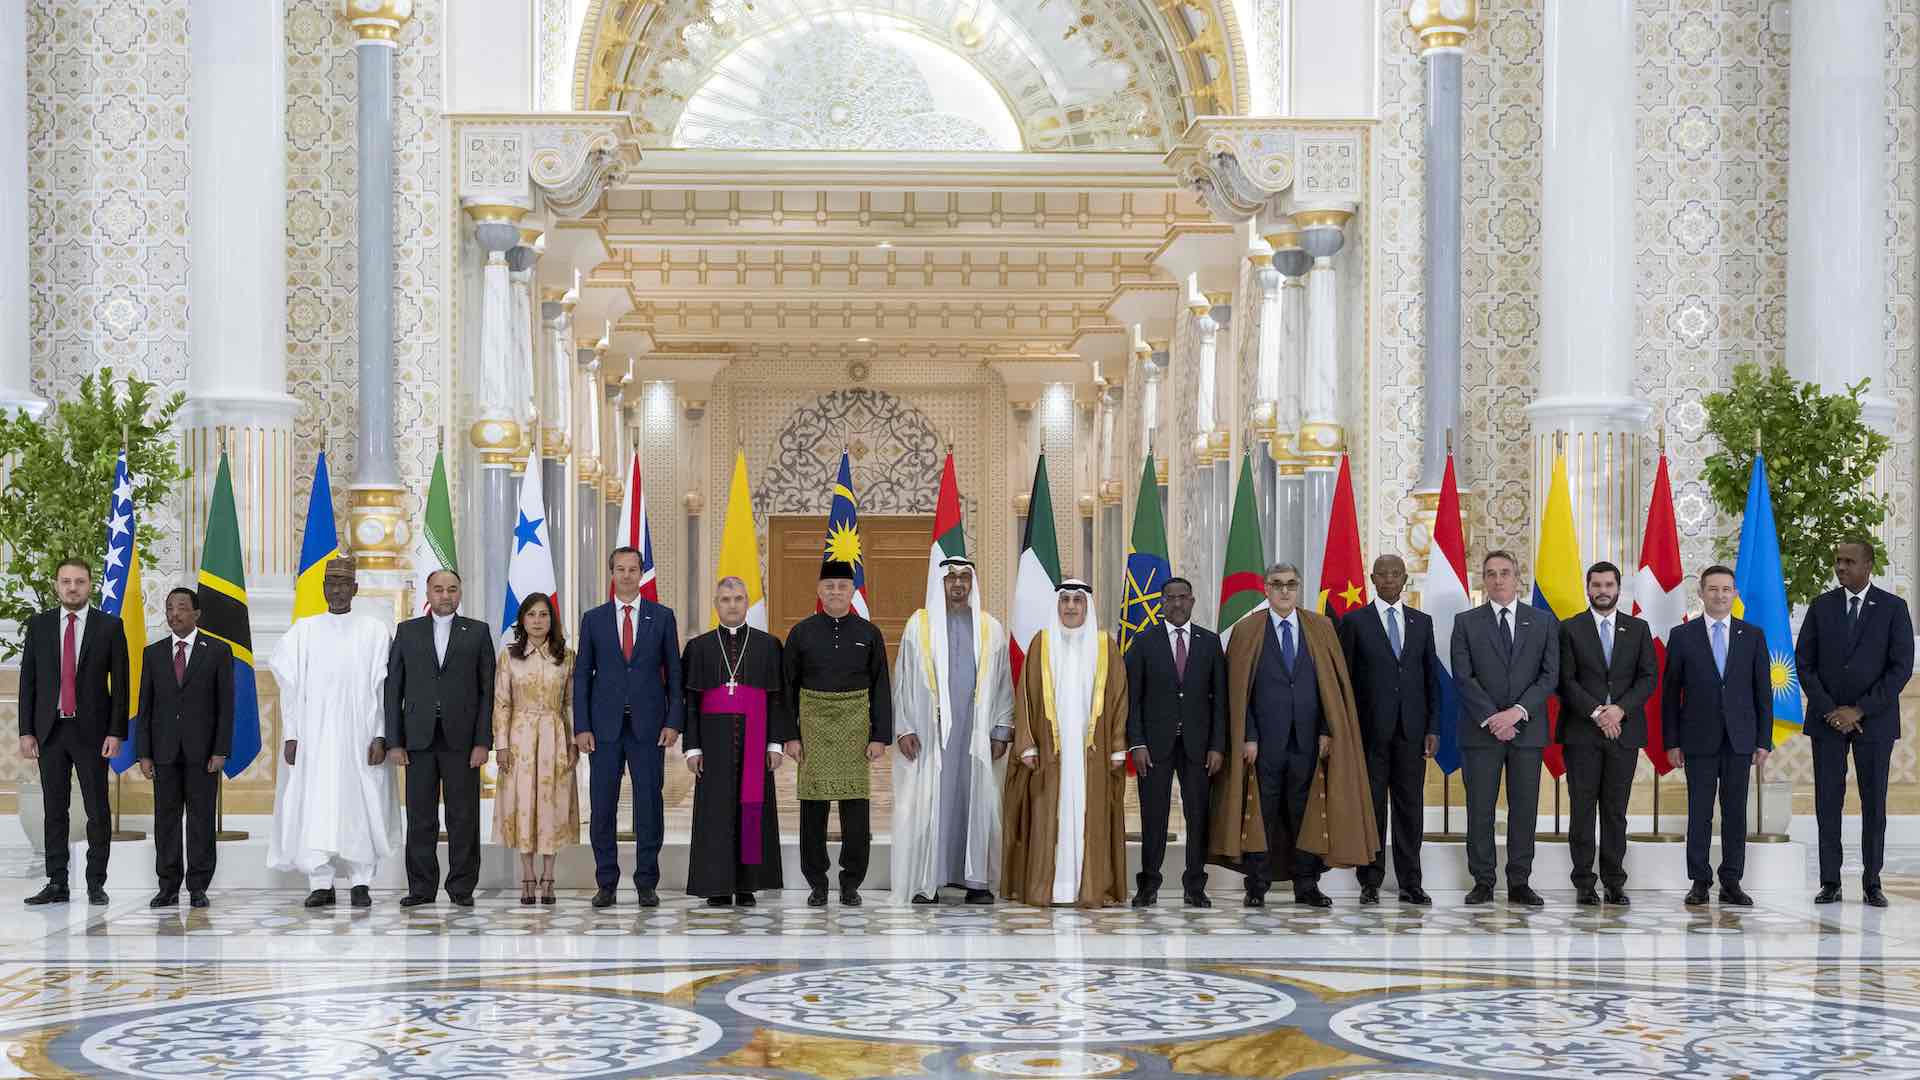 BAE Başkanı yabancı büyükelçileri karşılarken yeni diplomasi dönemi